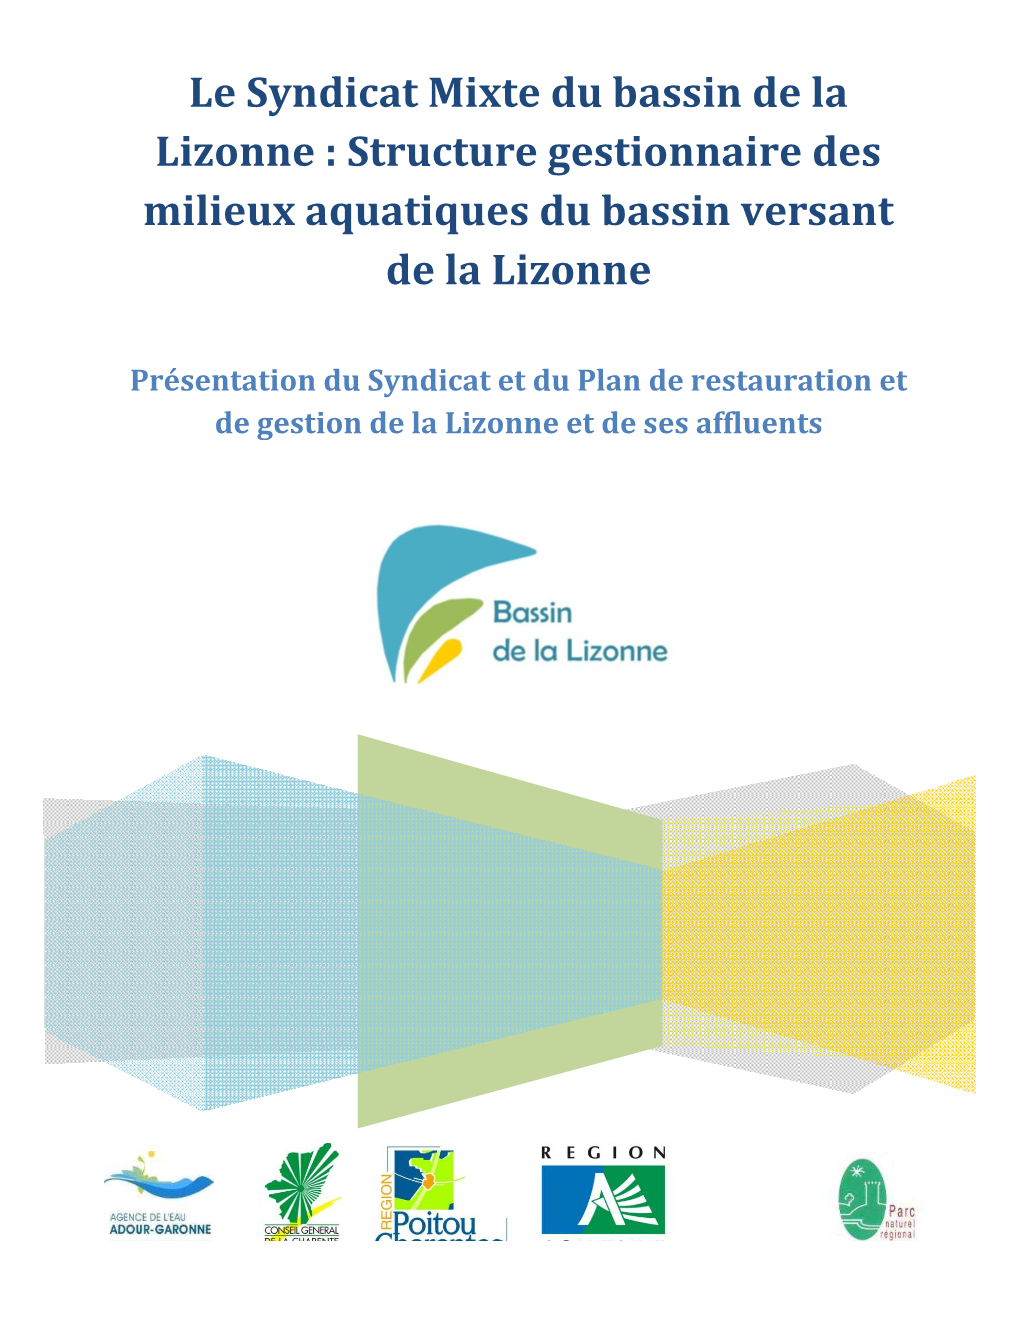 Structure Gestionnaire Des Milieux Aquatiques Du Bassin Versant De La Lizonne